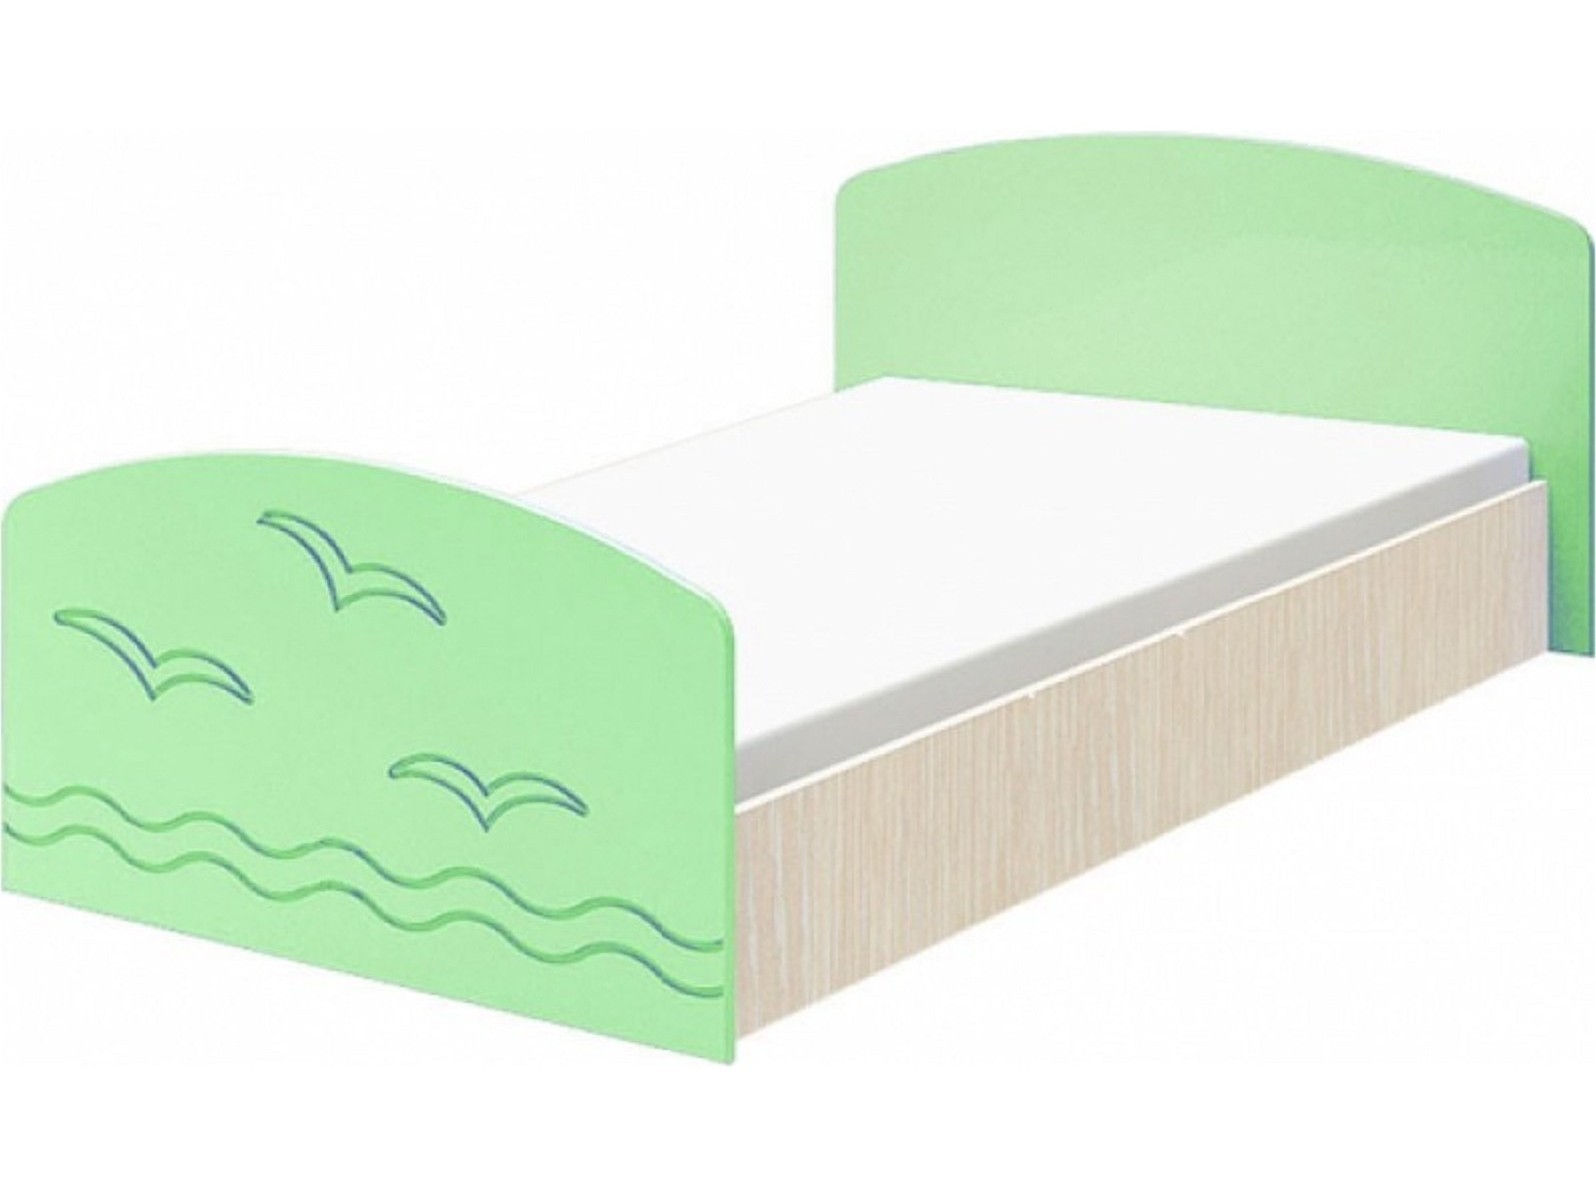 Юниор-2 Детская кровать 80, матовый (Салатовый, Дуб белёный) Зеленый, МДФ, ЛДСП юниор 2 детская кровать 80 матовый салатовый дуб белёный салатовый мдф лдсп